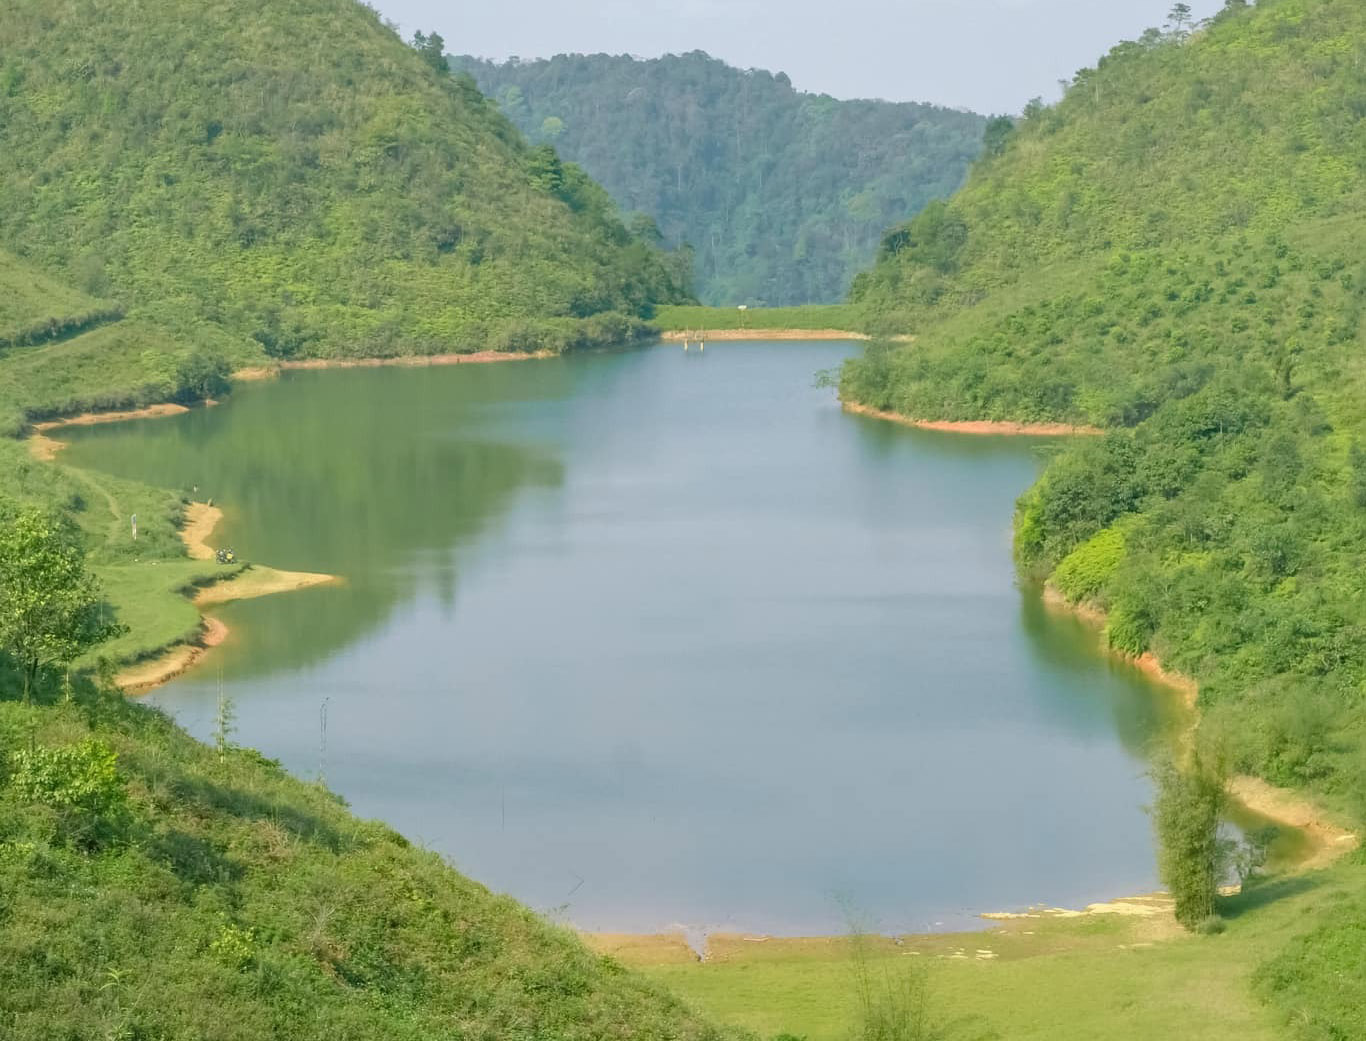 Sam Tang Lake (Hoa Binh): A serene lakeside retreat